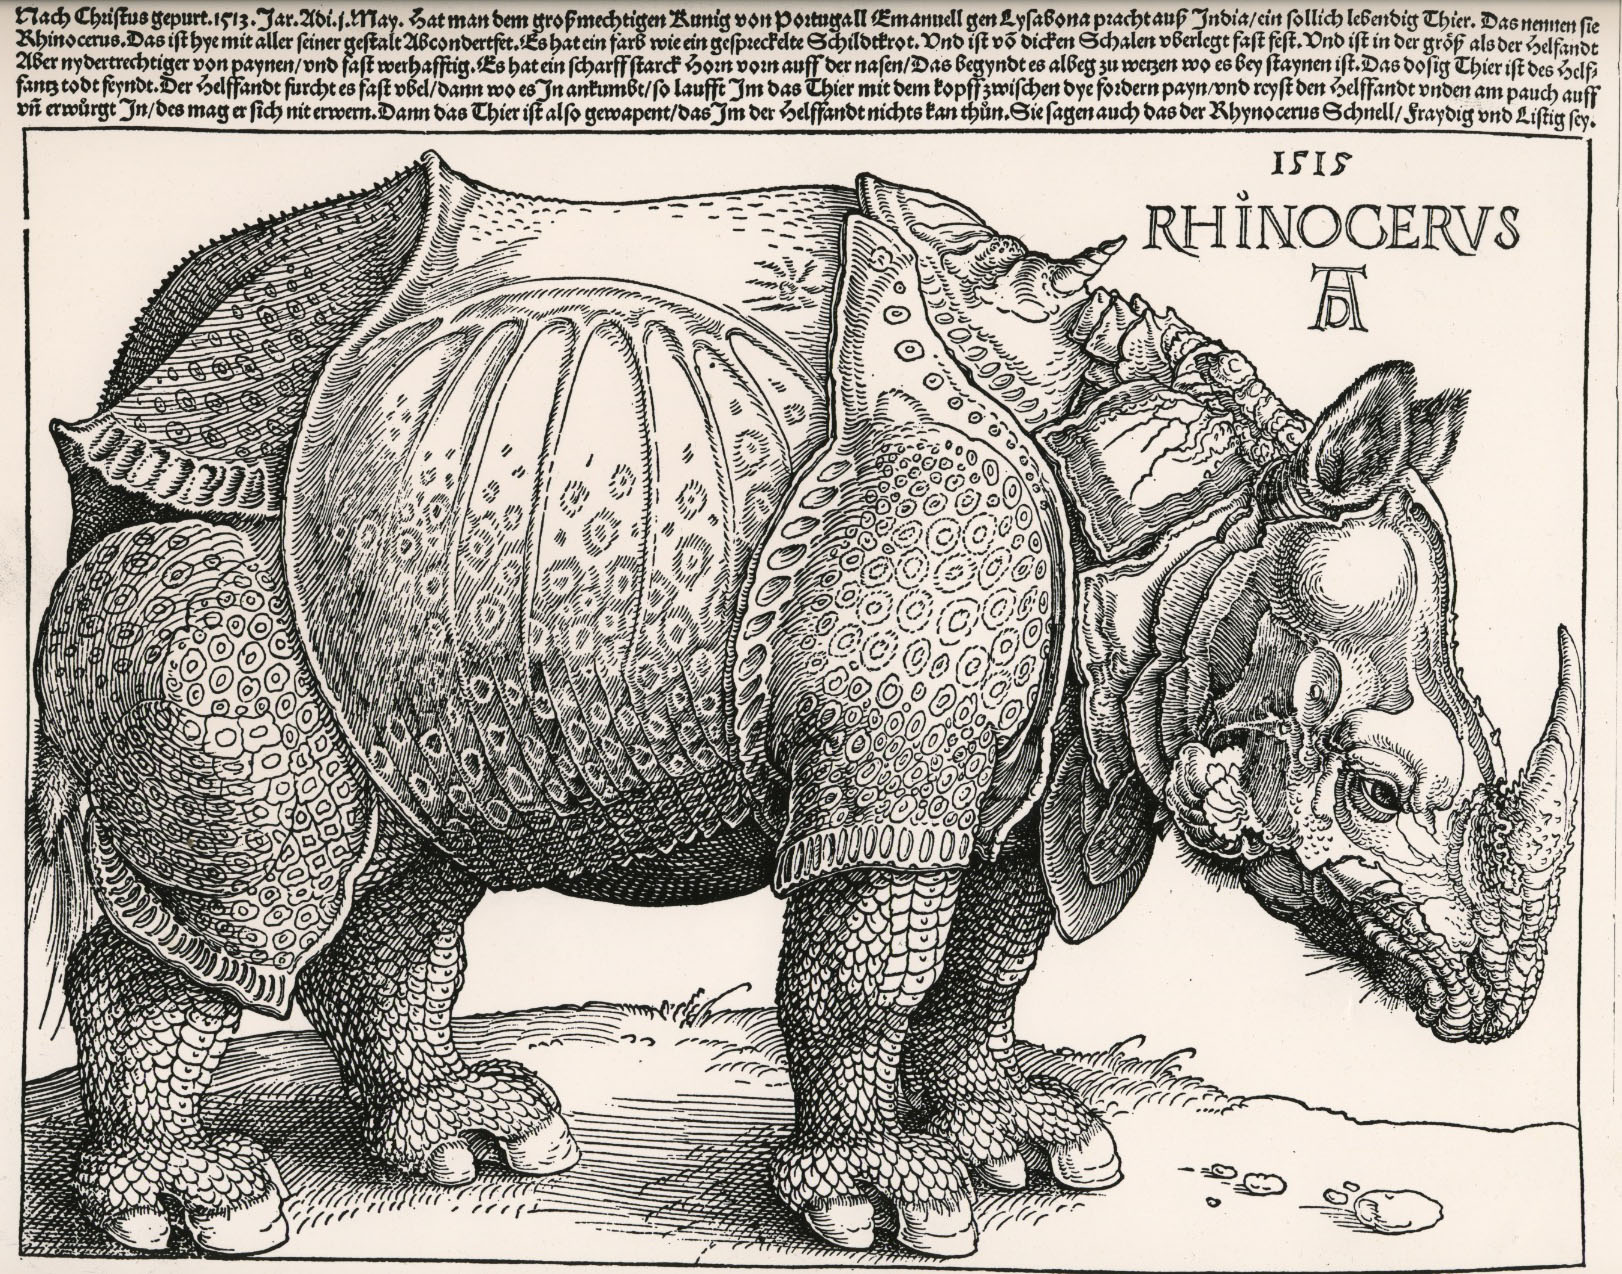 Durers-rhino-1515.jpg